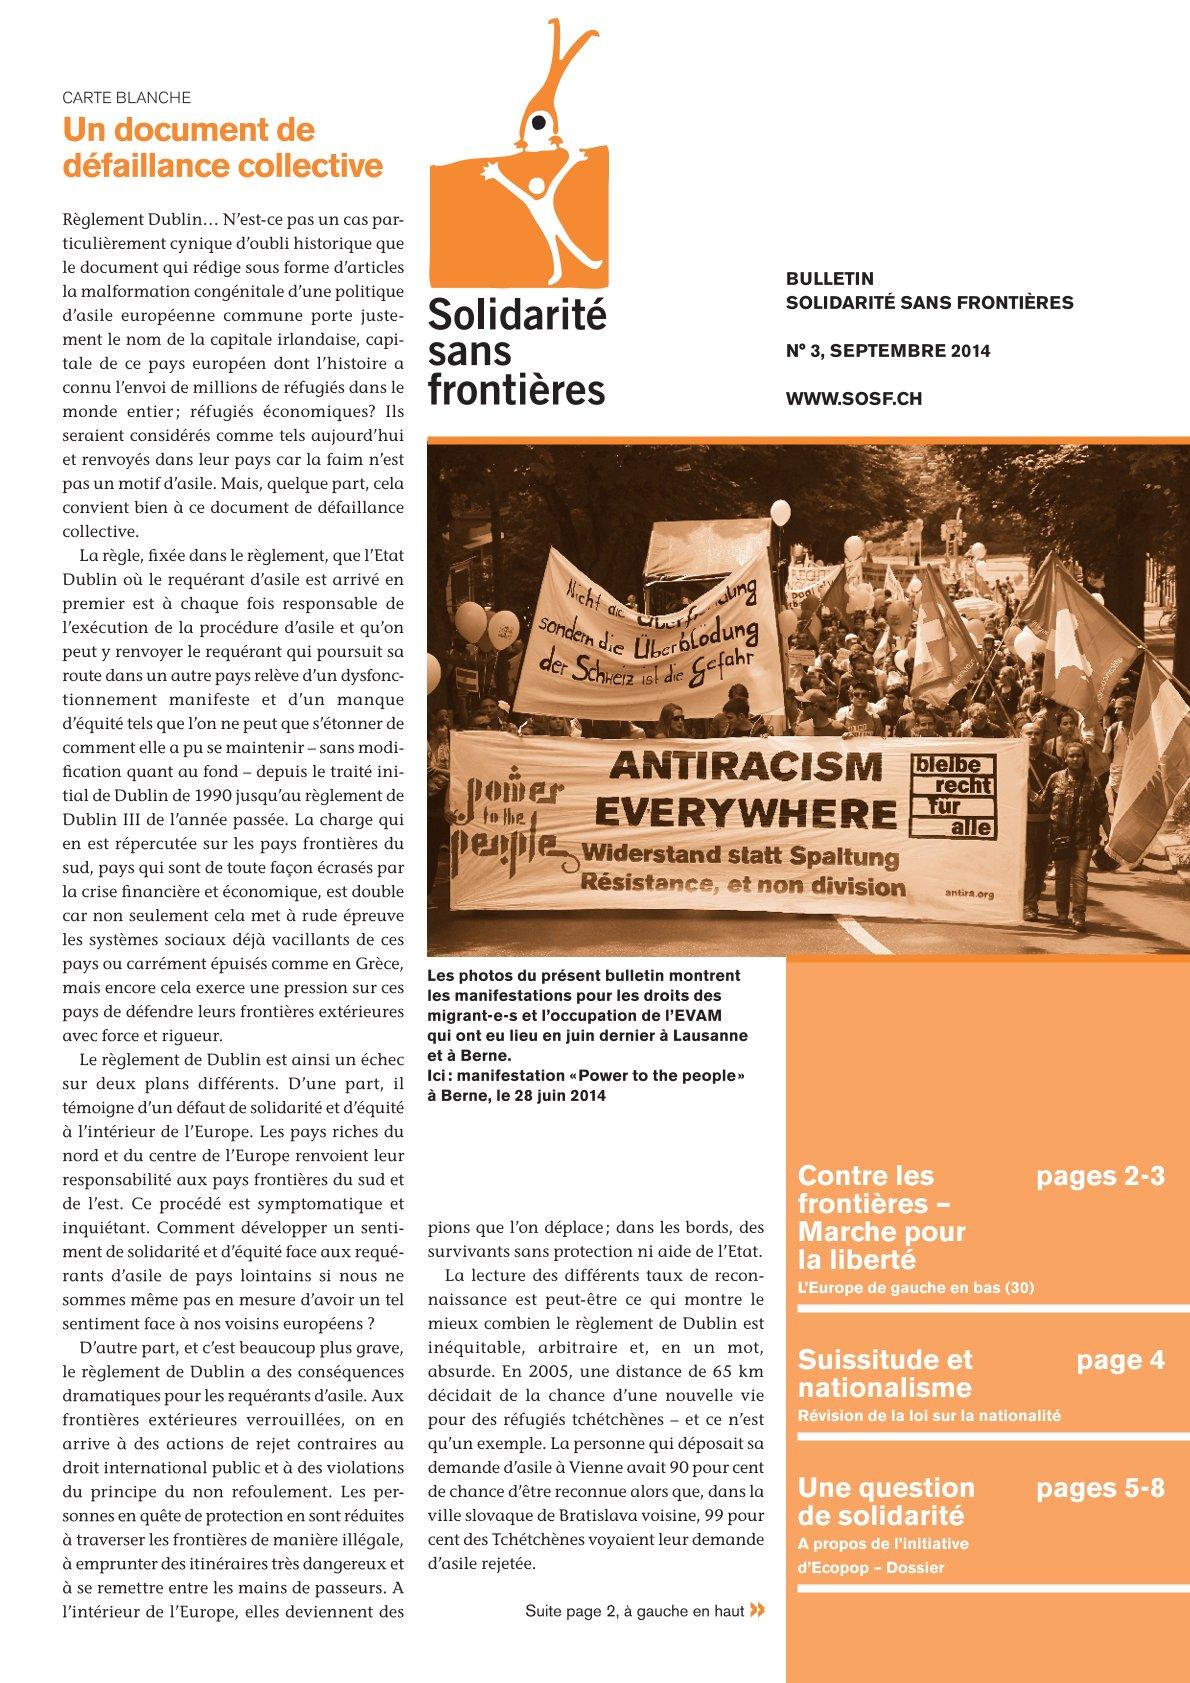 Bulletin, Nr. 3, 2014